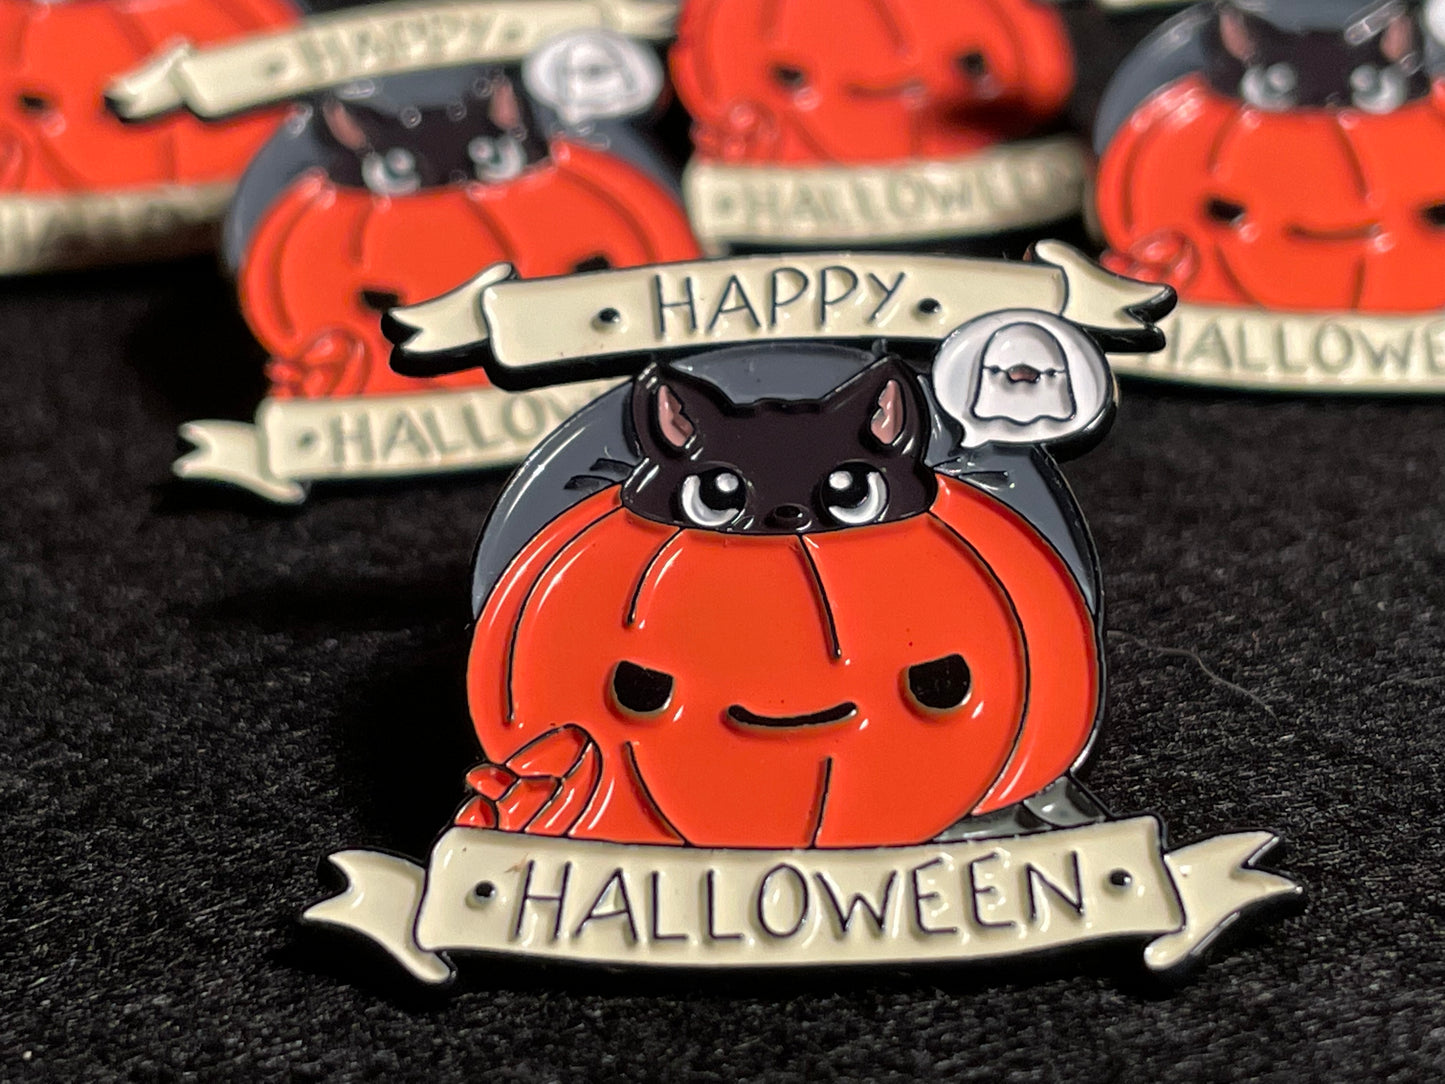 Happy Halloween Pumpkin Pin Badge